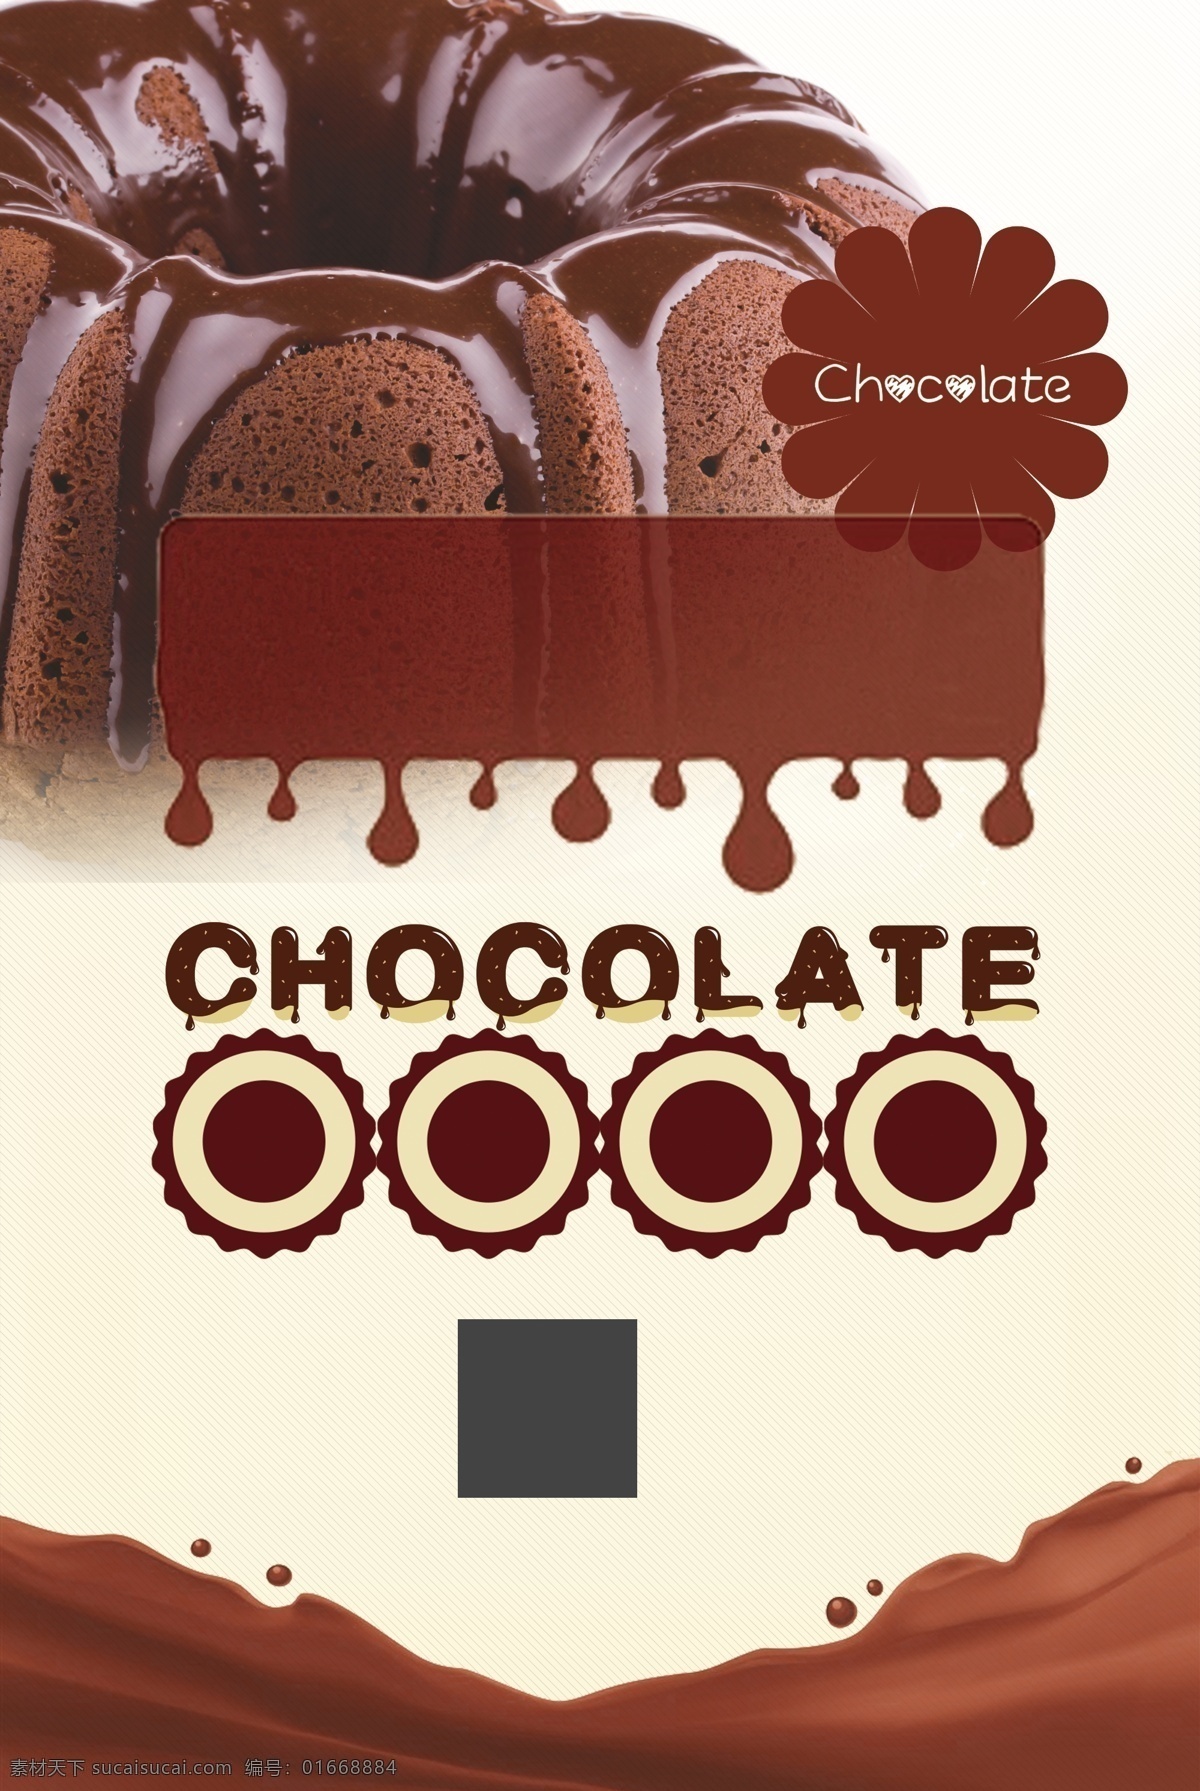 美味 巧克力 酱 蛋糕 广告 背景 美食 美食海报 广告背景 美食背景 巧克力蛋糕 褐色花纹 巧克力酱